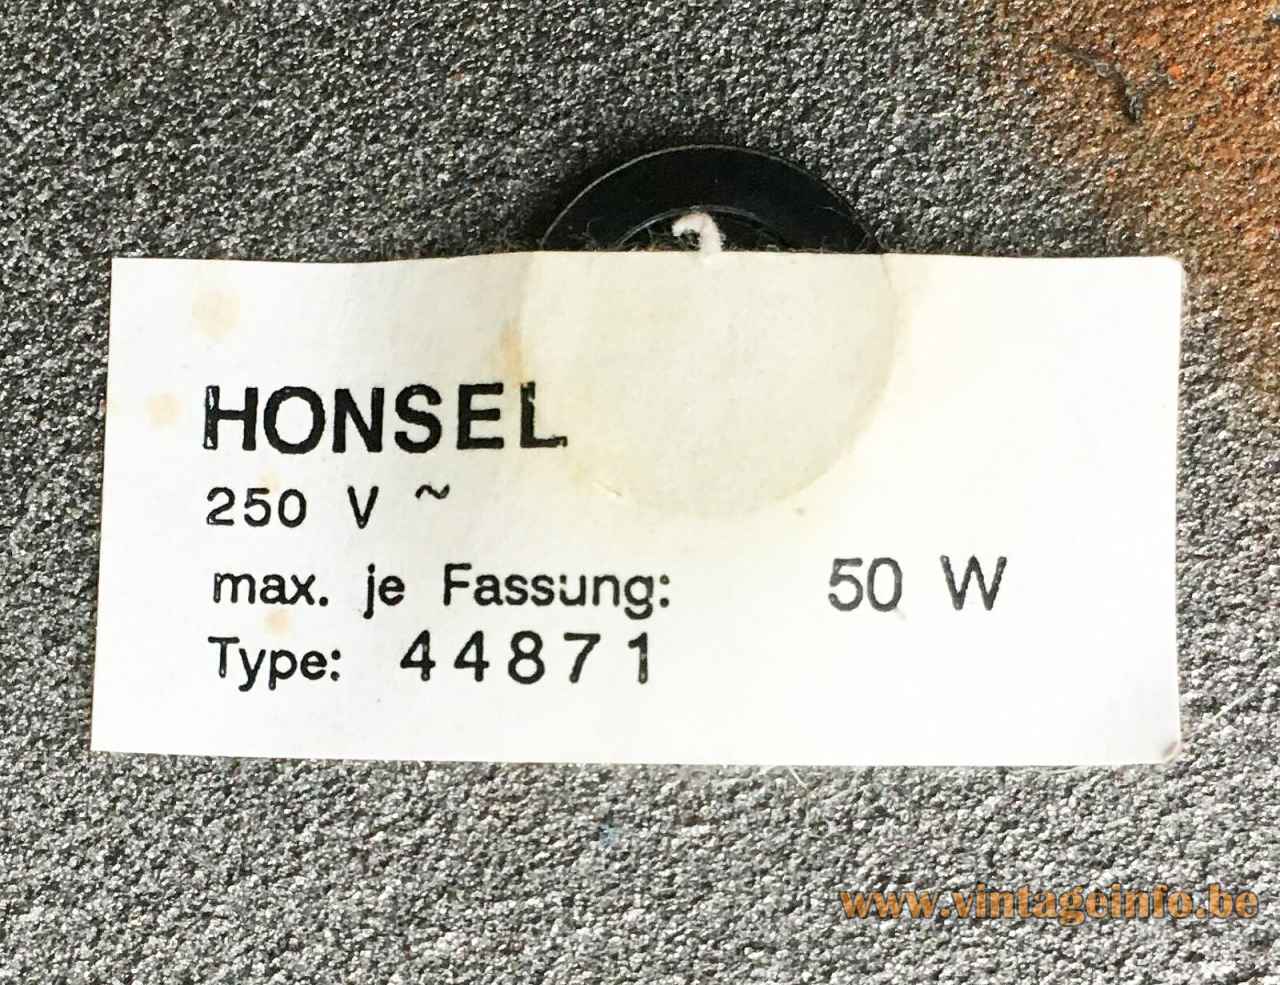 Honsel Leuchten 1980s floor lamp white paper label 44871 Germany halogen 50 Watt